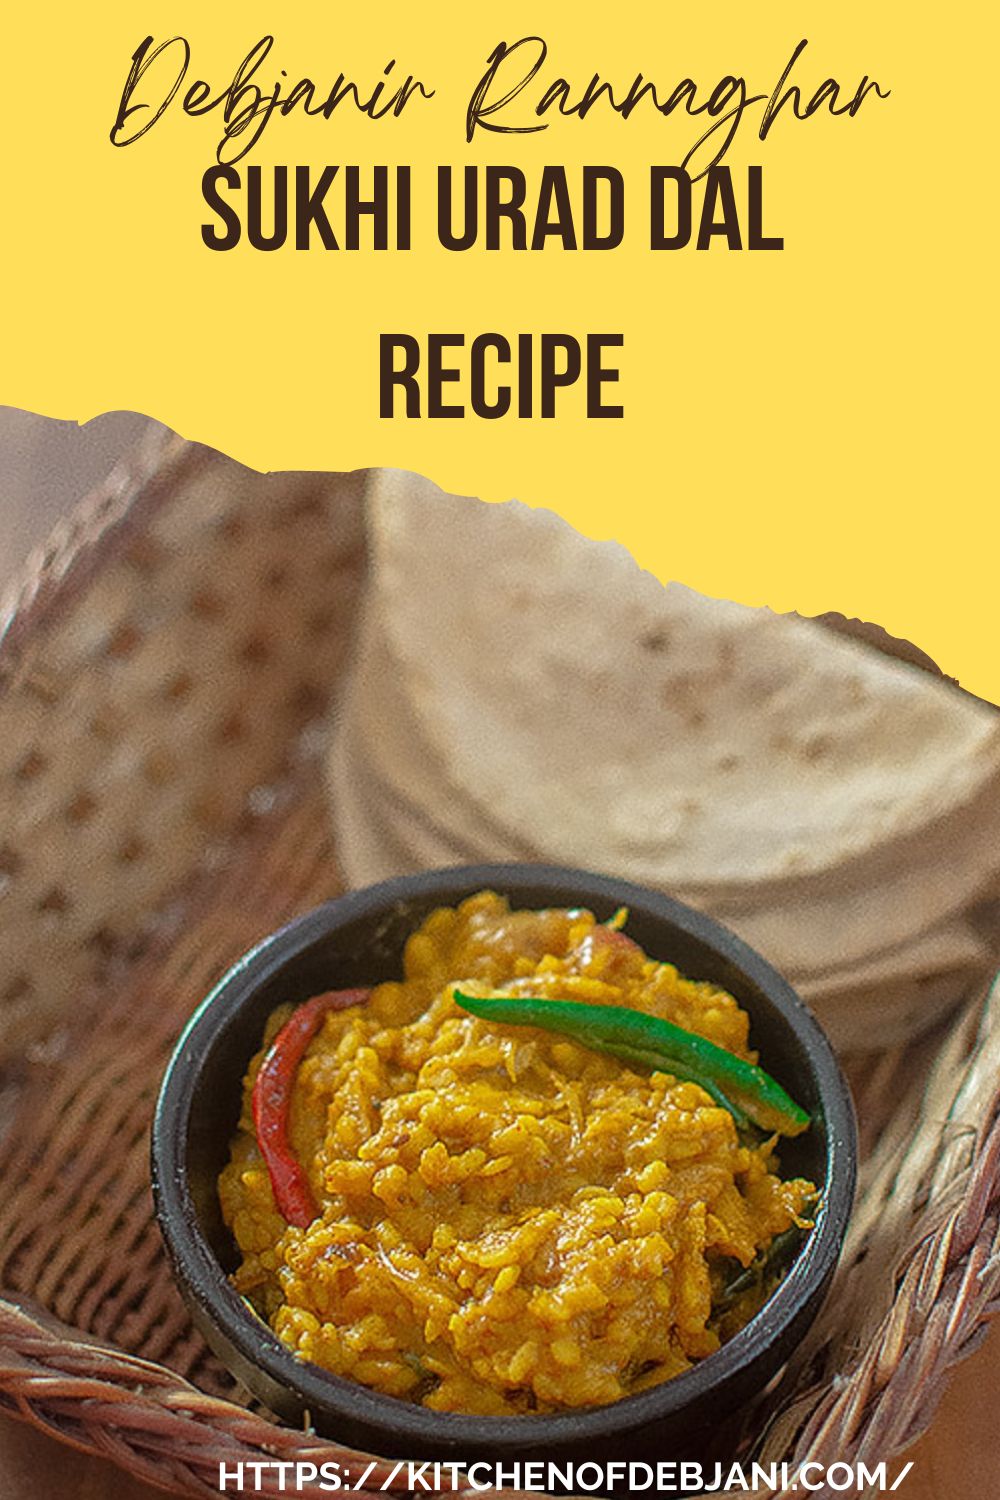 %Sukhi Urad Dal Debjanir Rannaghar Food Recipe Pinterest Pin